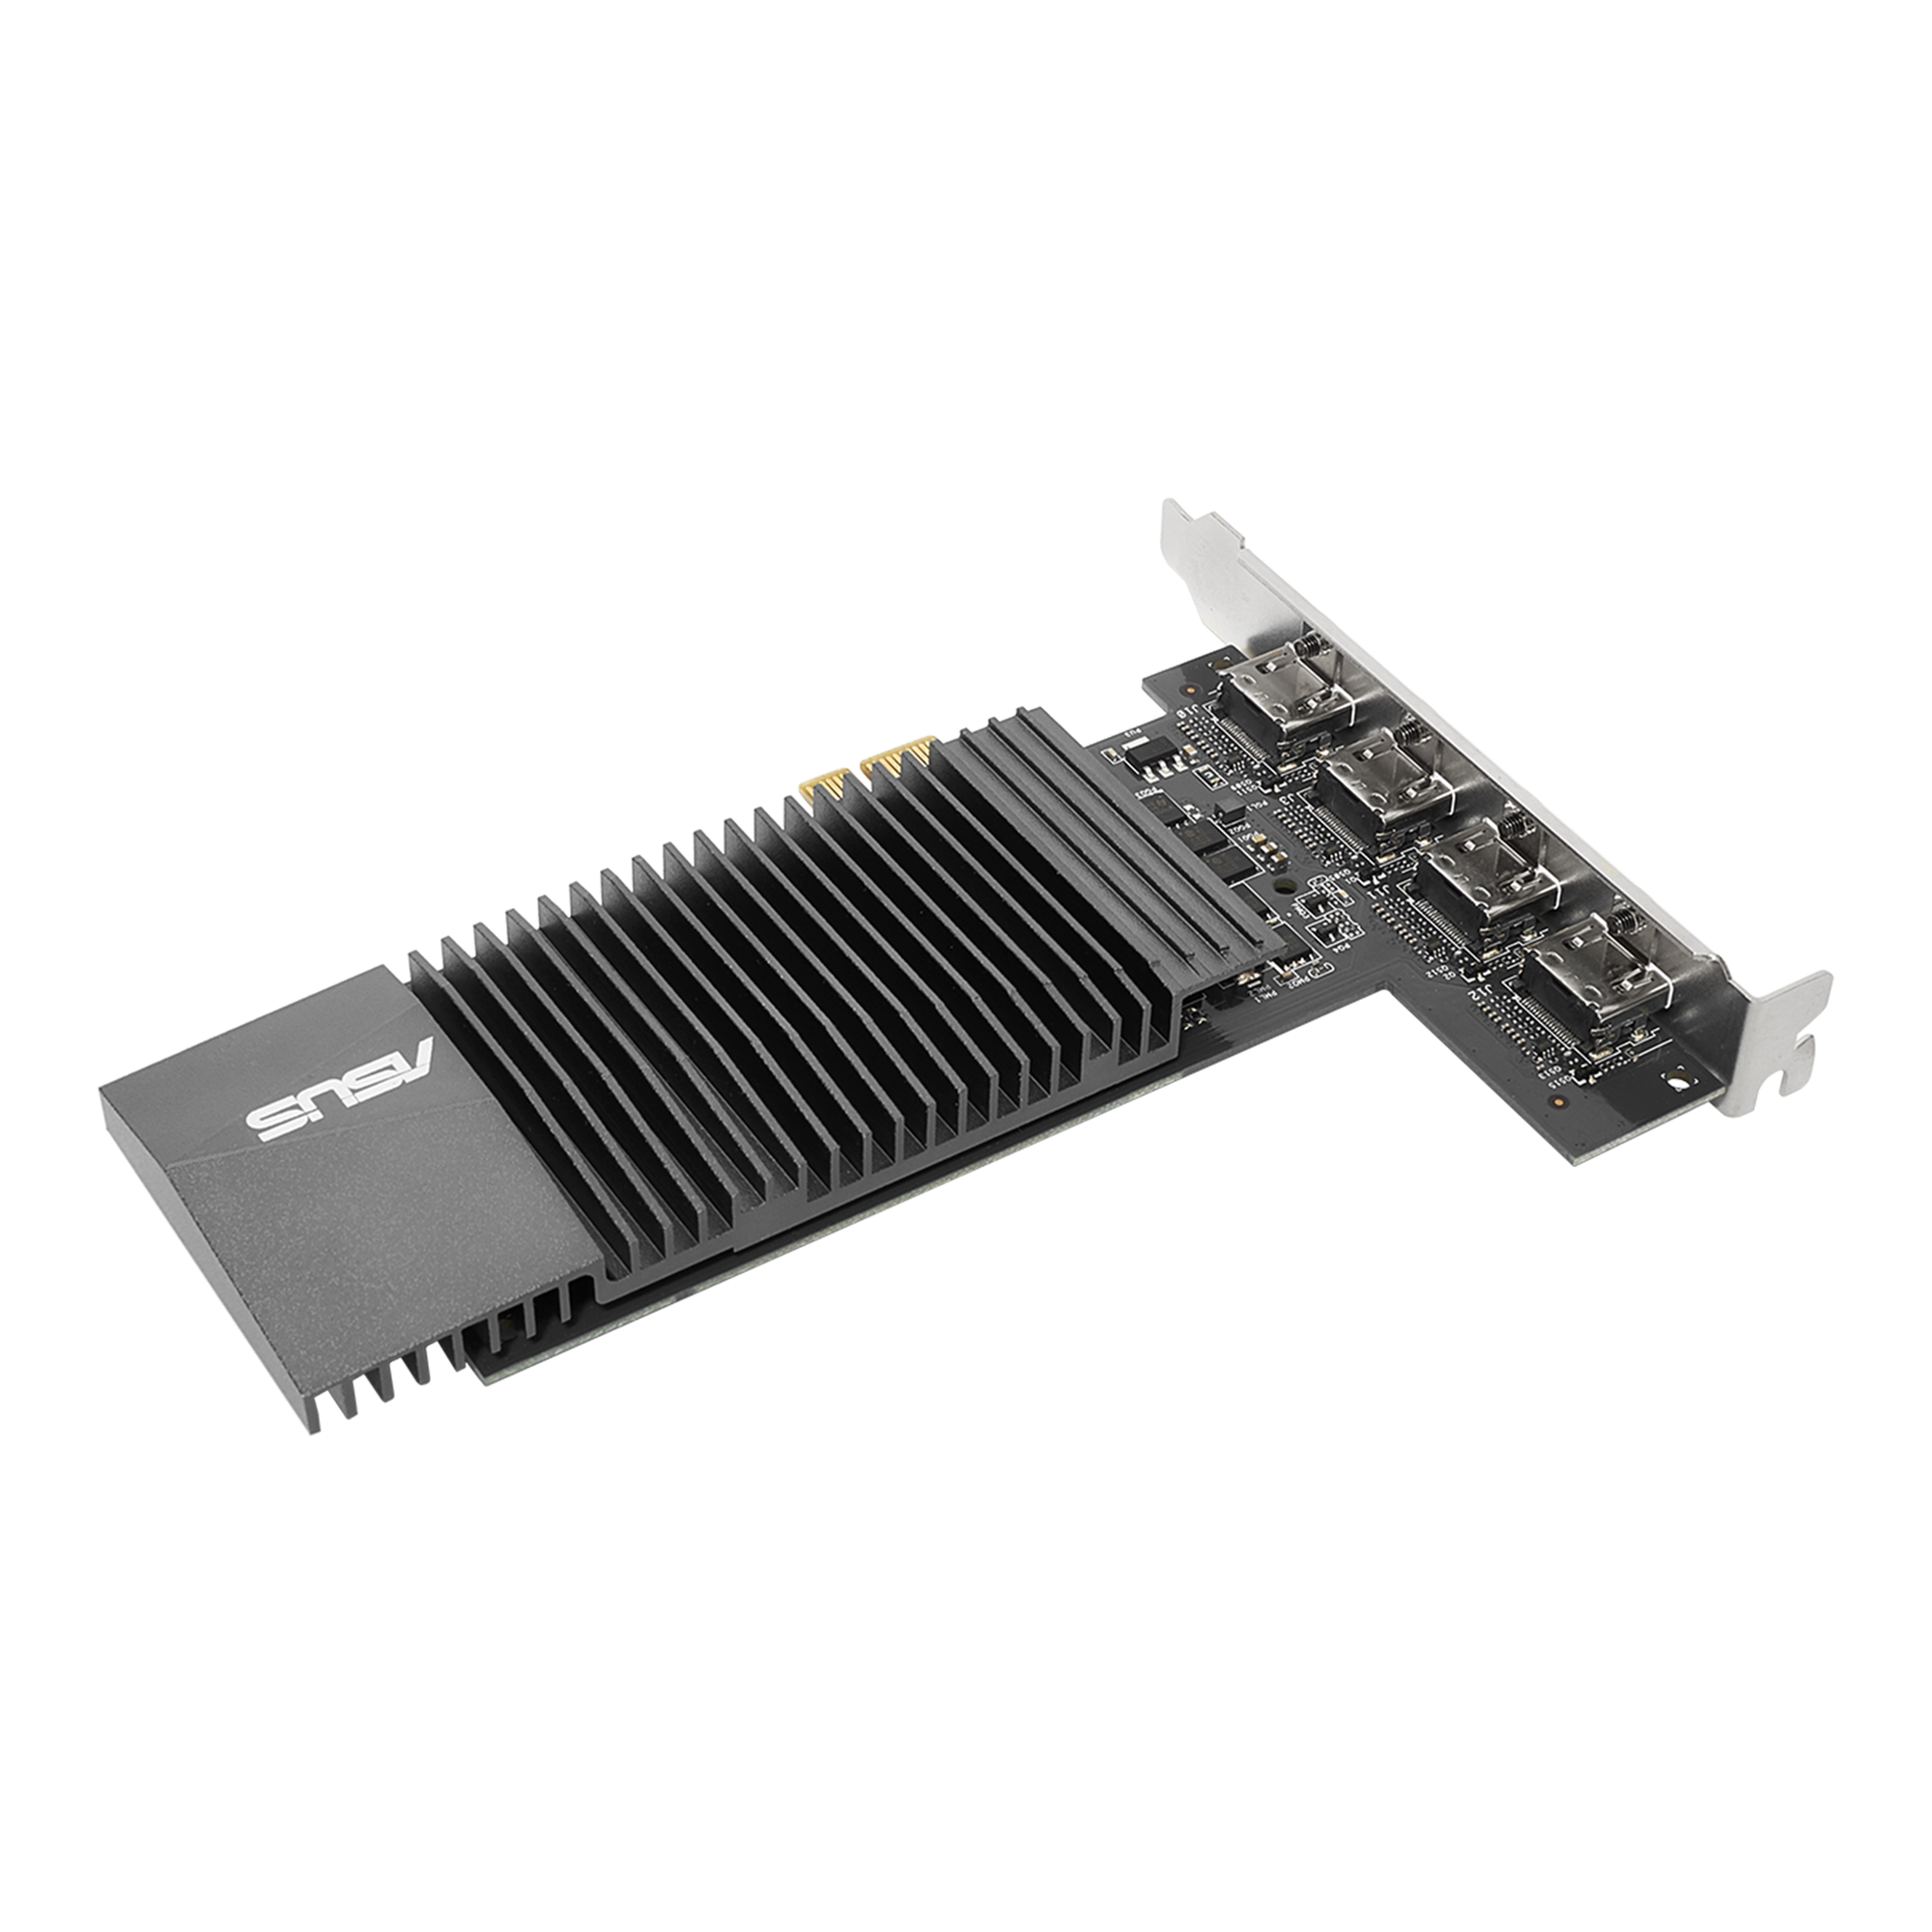 オープニング 大放出セール Asus GeForce GT710 GT-710-SL-2gd5-BRK PCI-E VGA DVI HDMI  GDDR5 2G